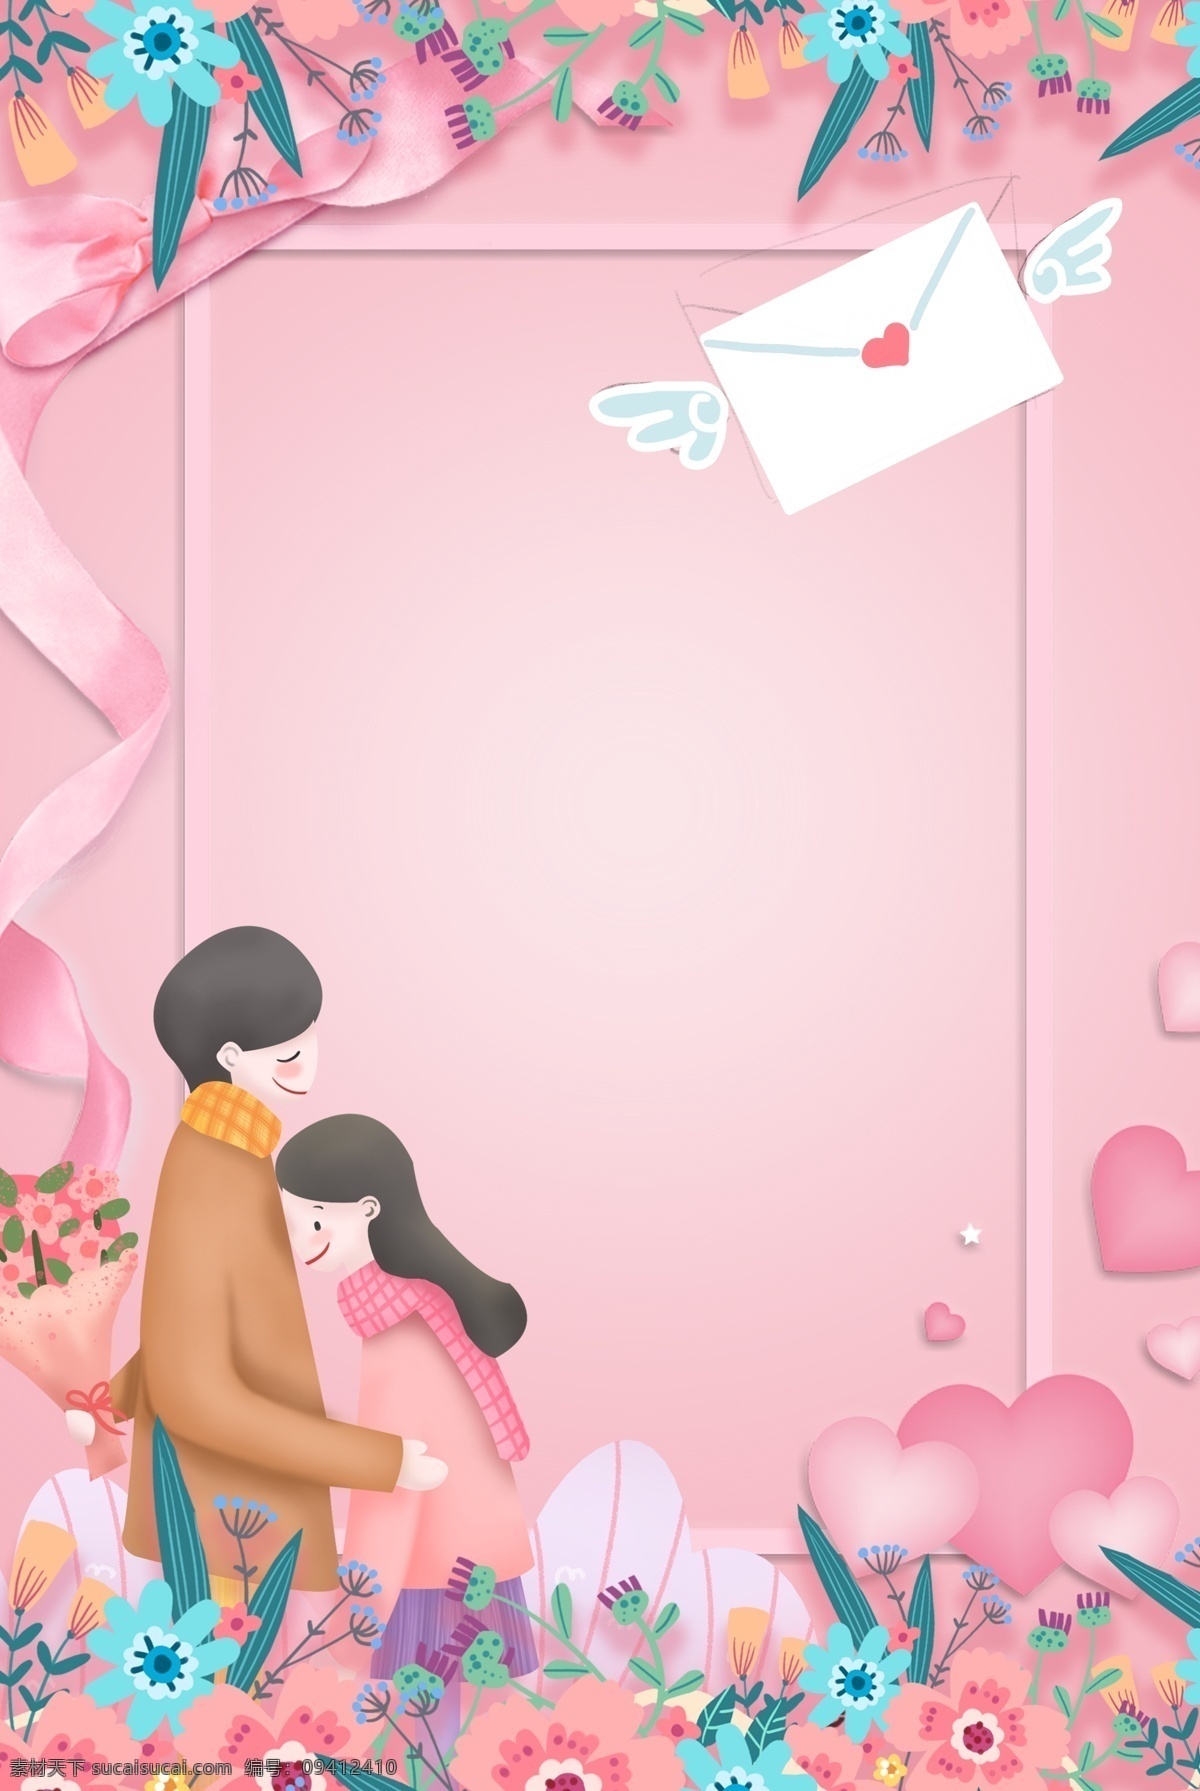 520 网络 情人节 告白 粉色 浪漫 背景 为爱放价 520表白节 爱情 结婚 婚庆 电商